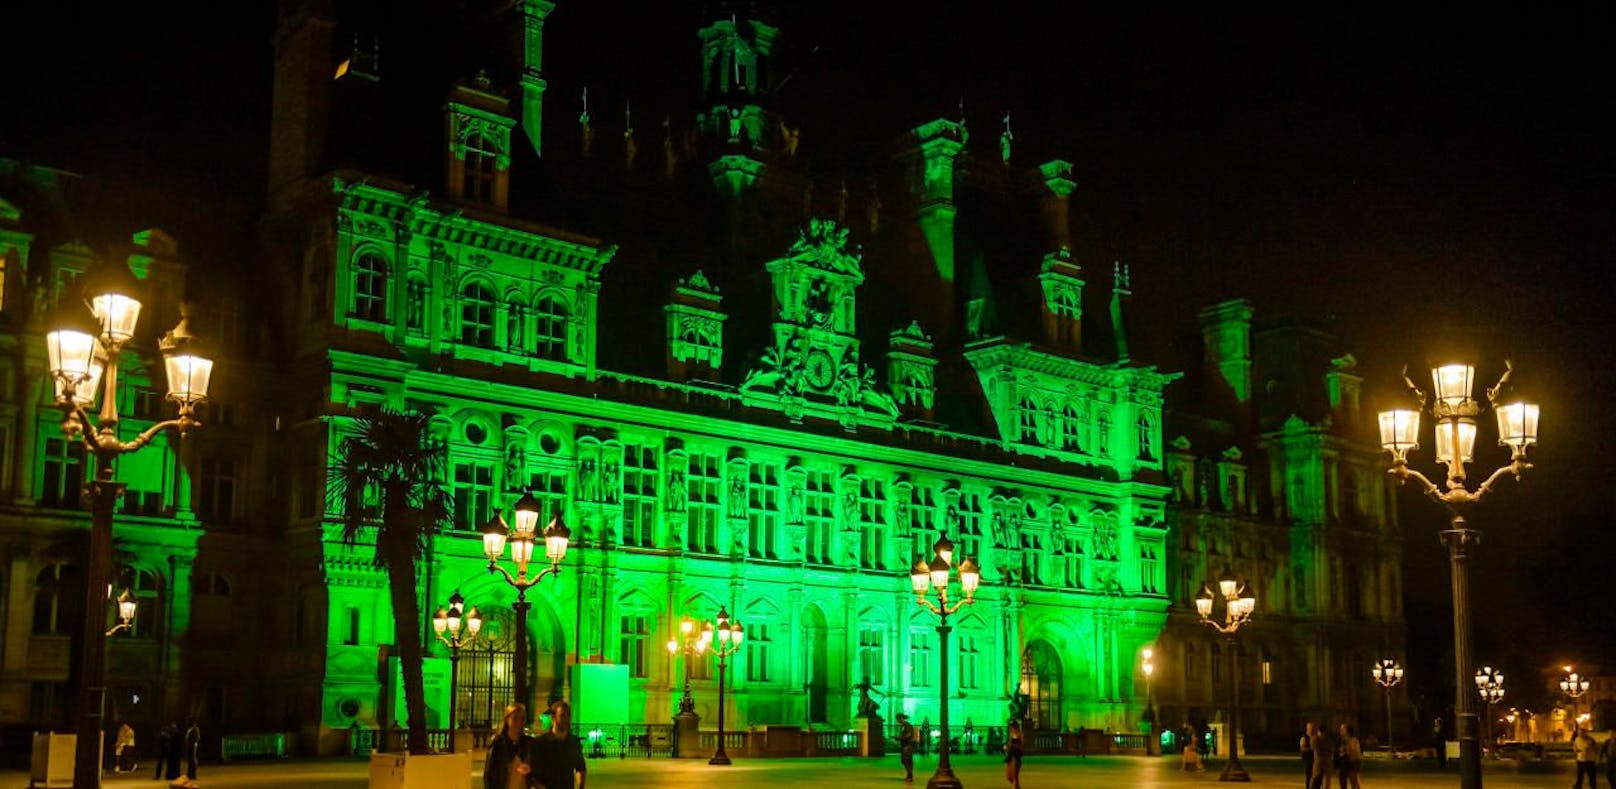 Das Pariser Rathaus wurde aus Protest grün erleuchtet.